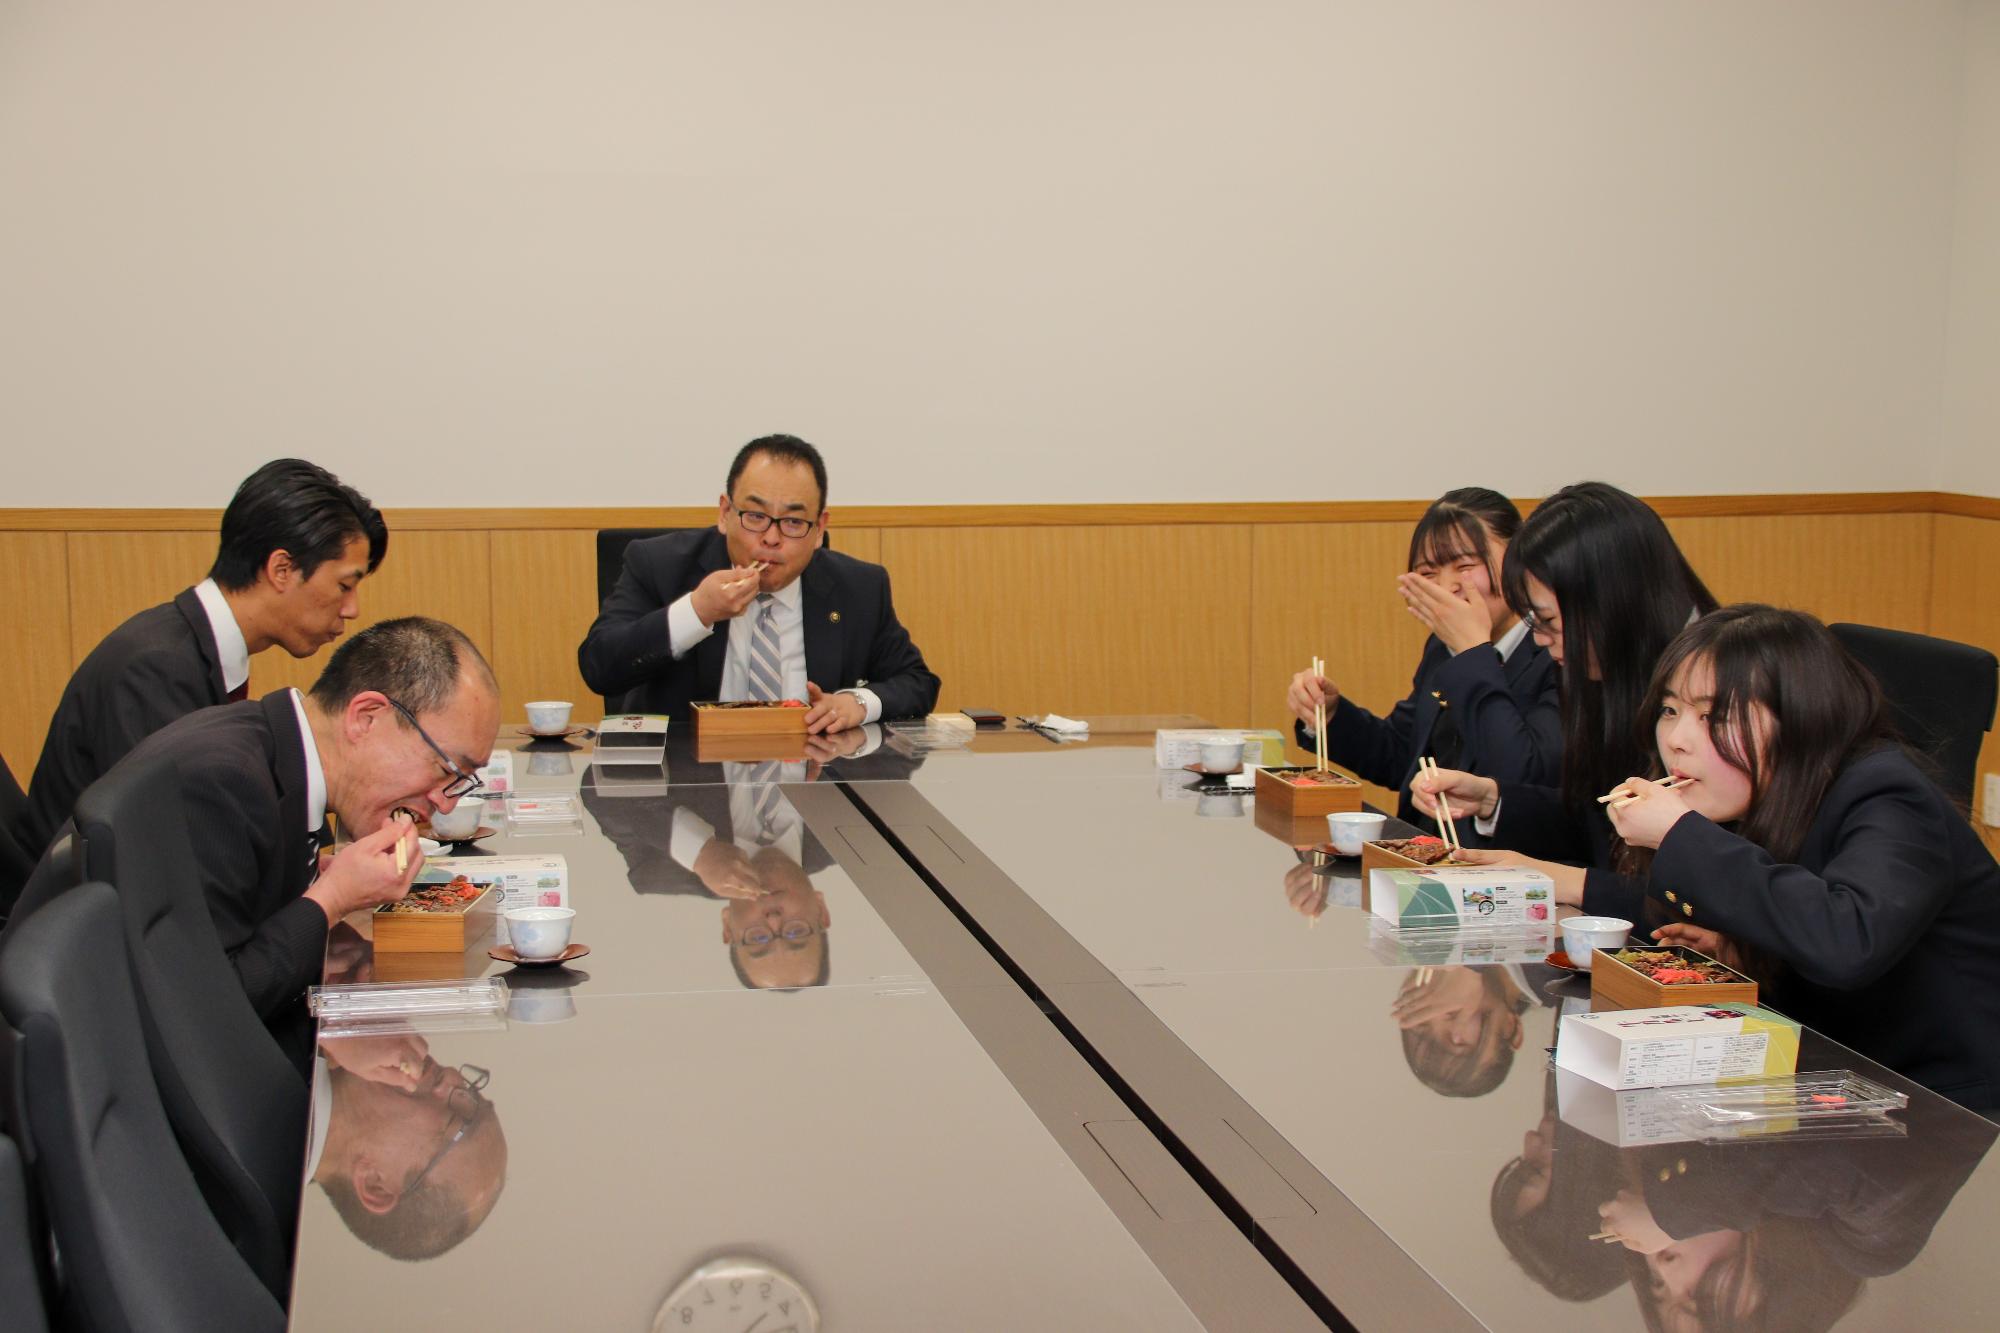 弁当を試食をする小川市長と参加者